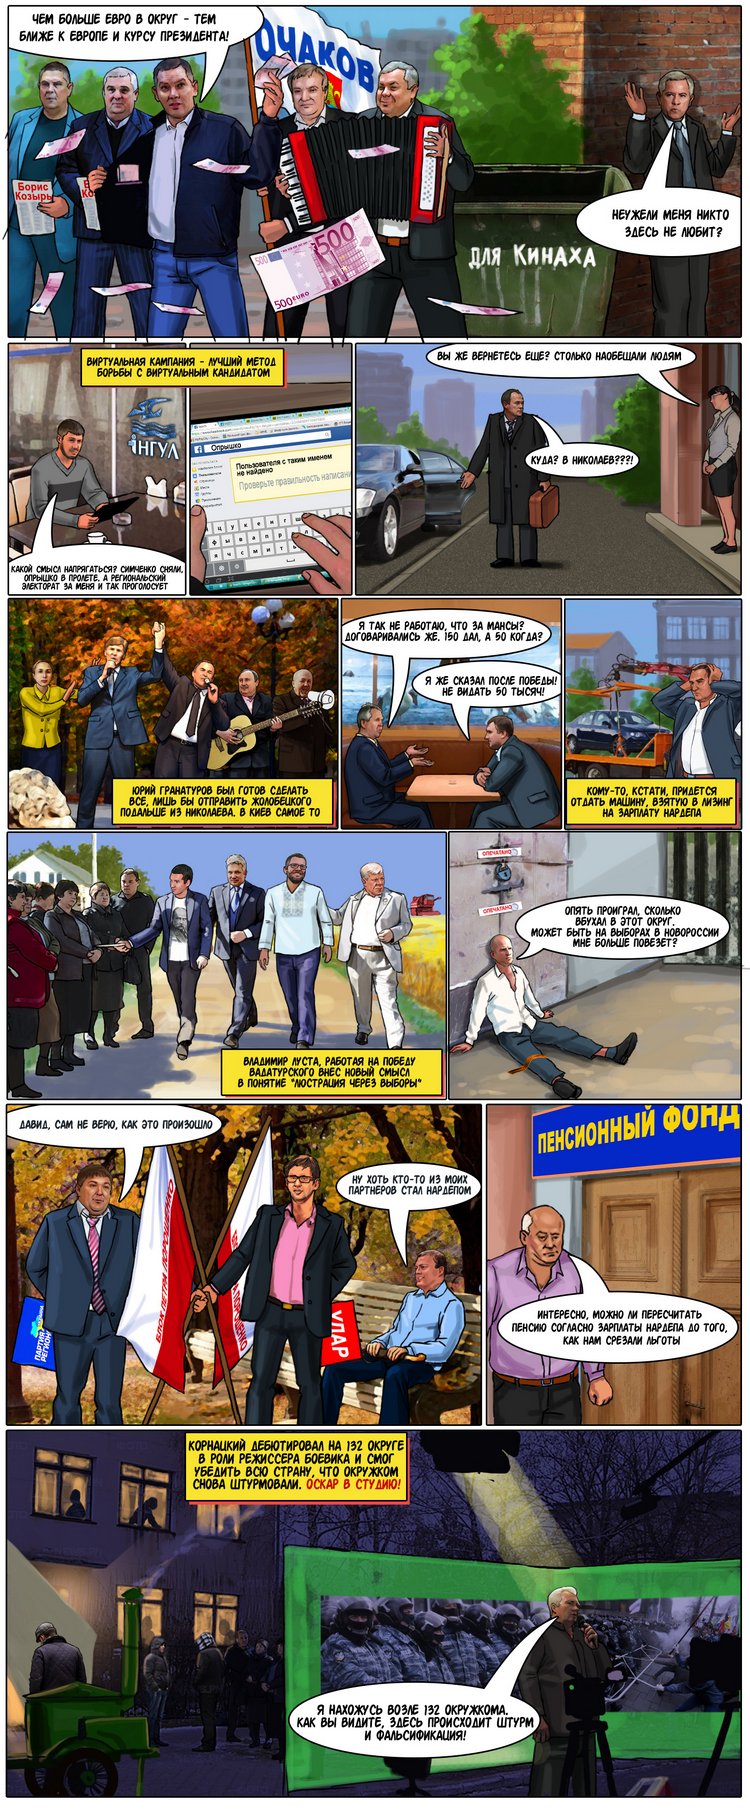 політичний комікс, комікс про вибори, вибори у коміксах, Вадатурський, Ольшевський